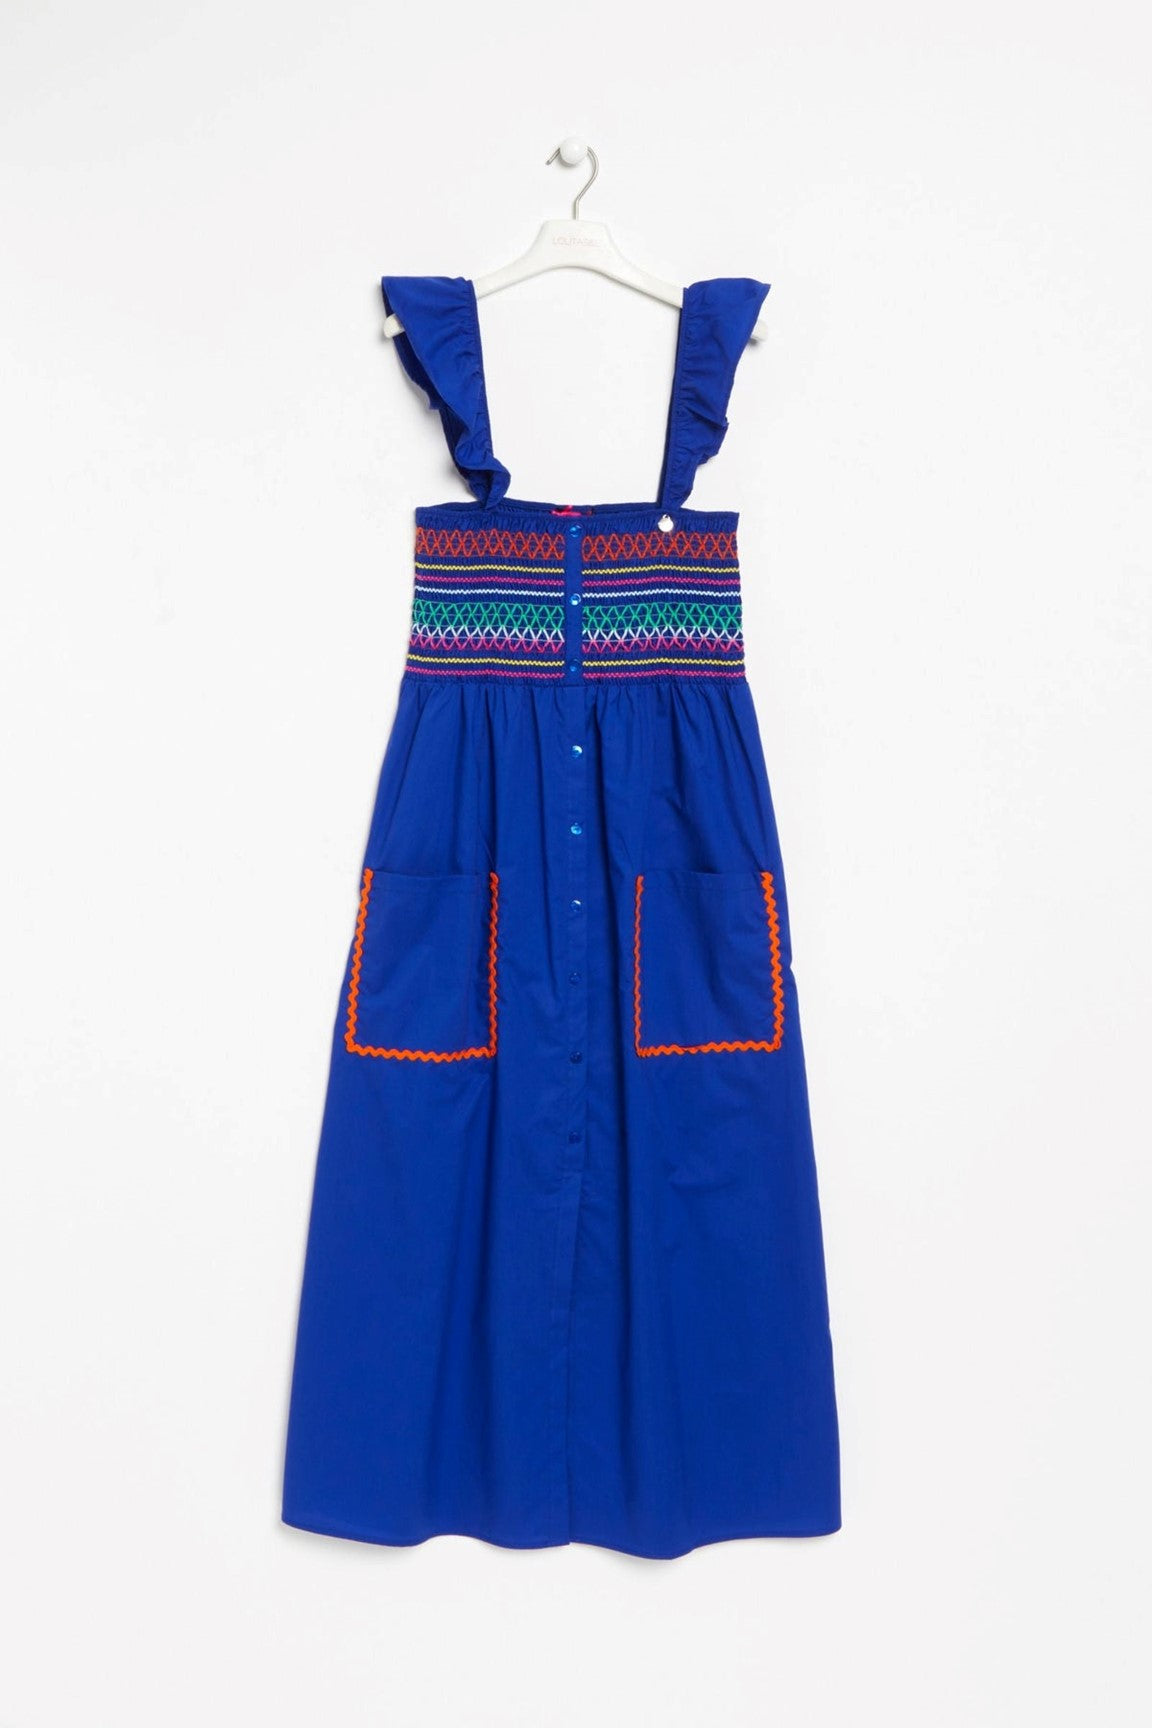 Vibrant Blue Smocked- Bodice Dress in Cotton Poplin - Ms.Meri Mak